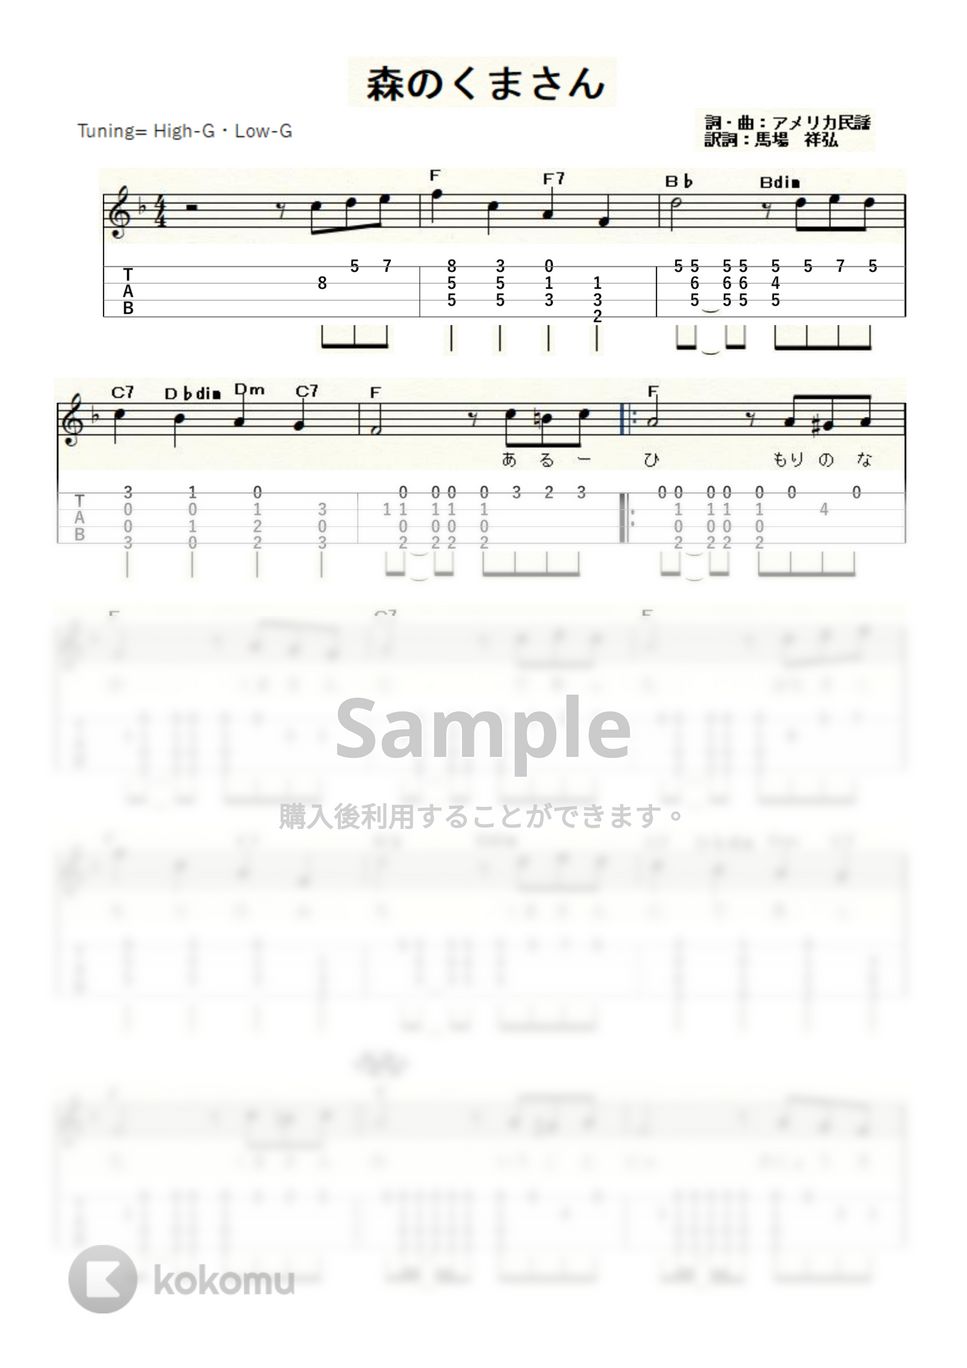 森のくまさん (ｳｸﾚﾚｿﾛ / High-G・Low-G / 中級) by ukulelepapa